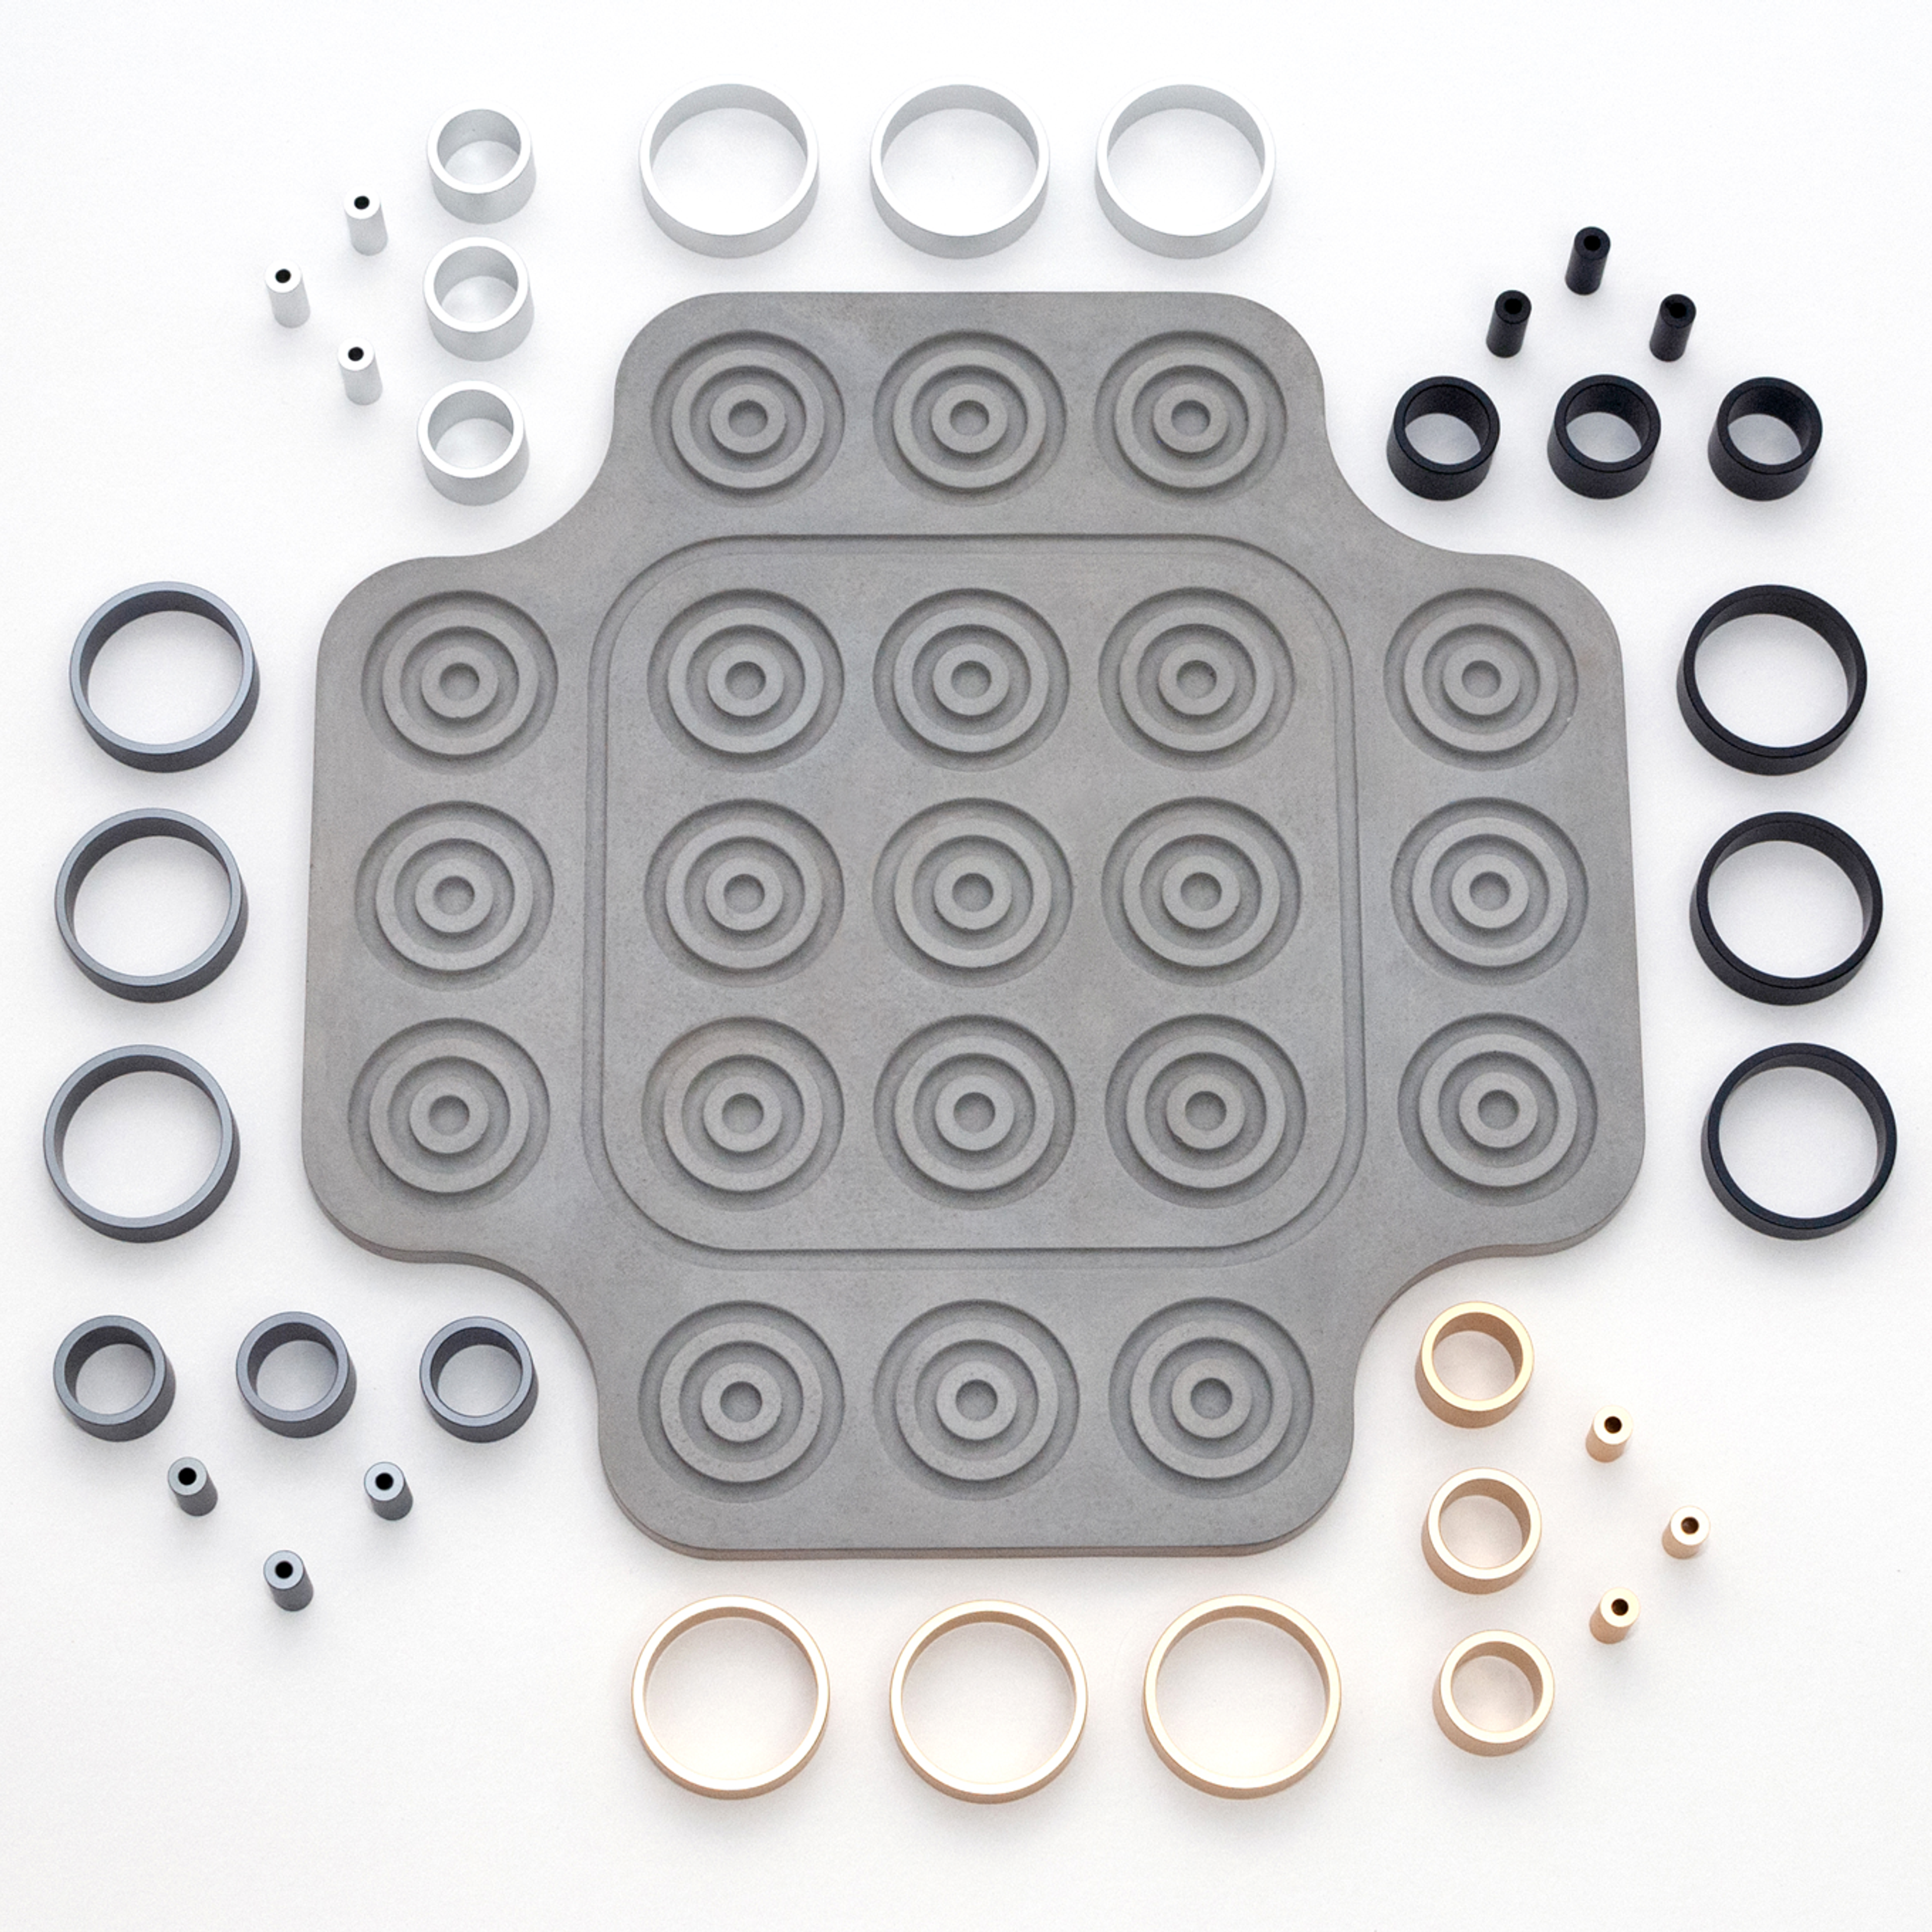 Otrio Inventor's Edition: Concrete (Luxe Aluminum Ring Set)